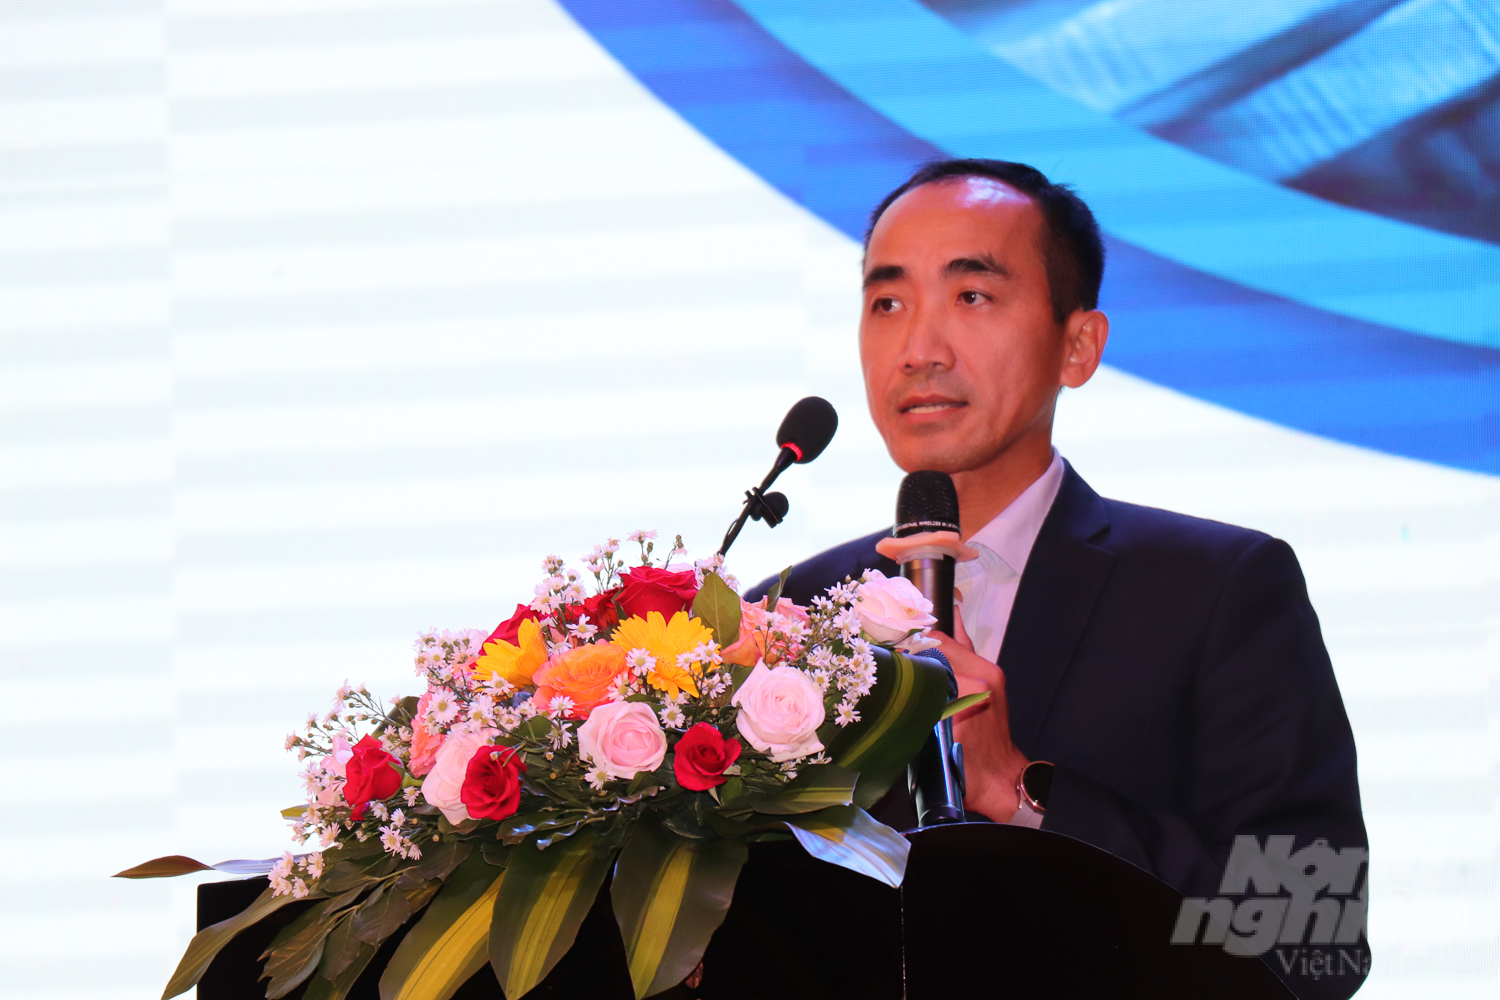 Ông Nguyễn Phương Lam, Giám đốc VCCI Cần Thơ cho biết, số lượng doanh nghiệp FDI đầu tư vào ĐBSCL hiện còn khiêm tốn so với các khu vực khác trong cả nước. Ảnh: Kim Anh.